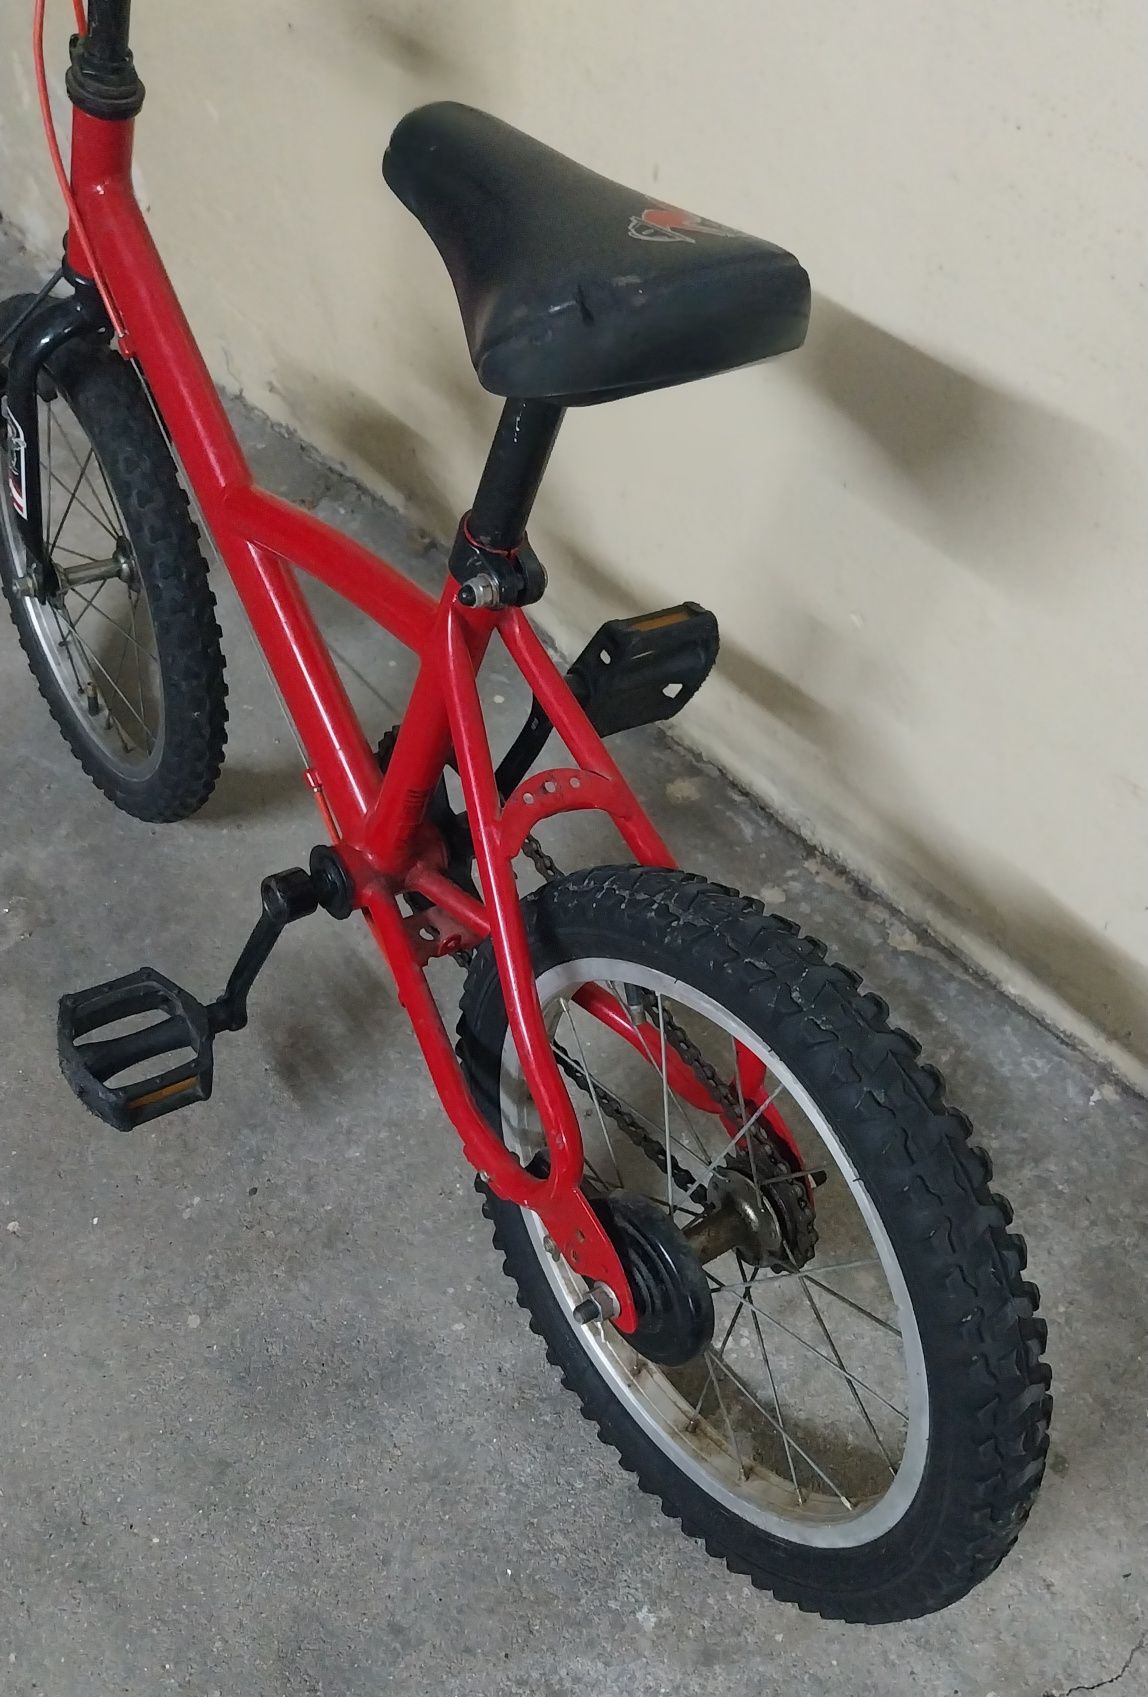 Bicicleta de Criança, roda 14, com pneu novo e punhos novos
Esta em óp